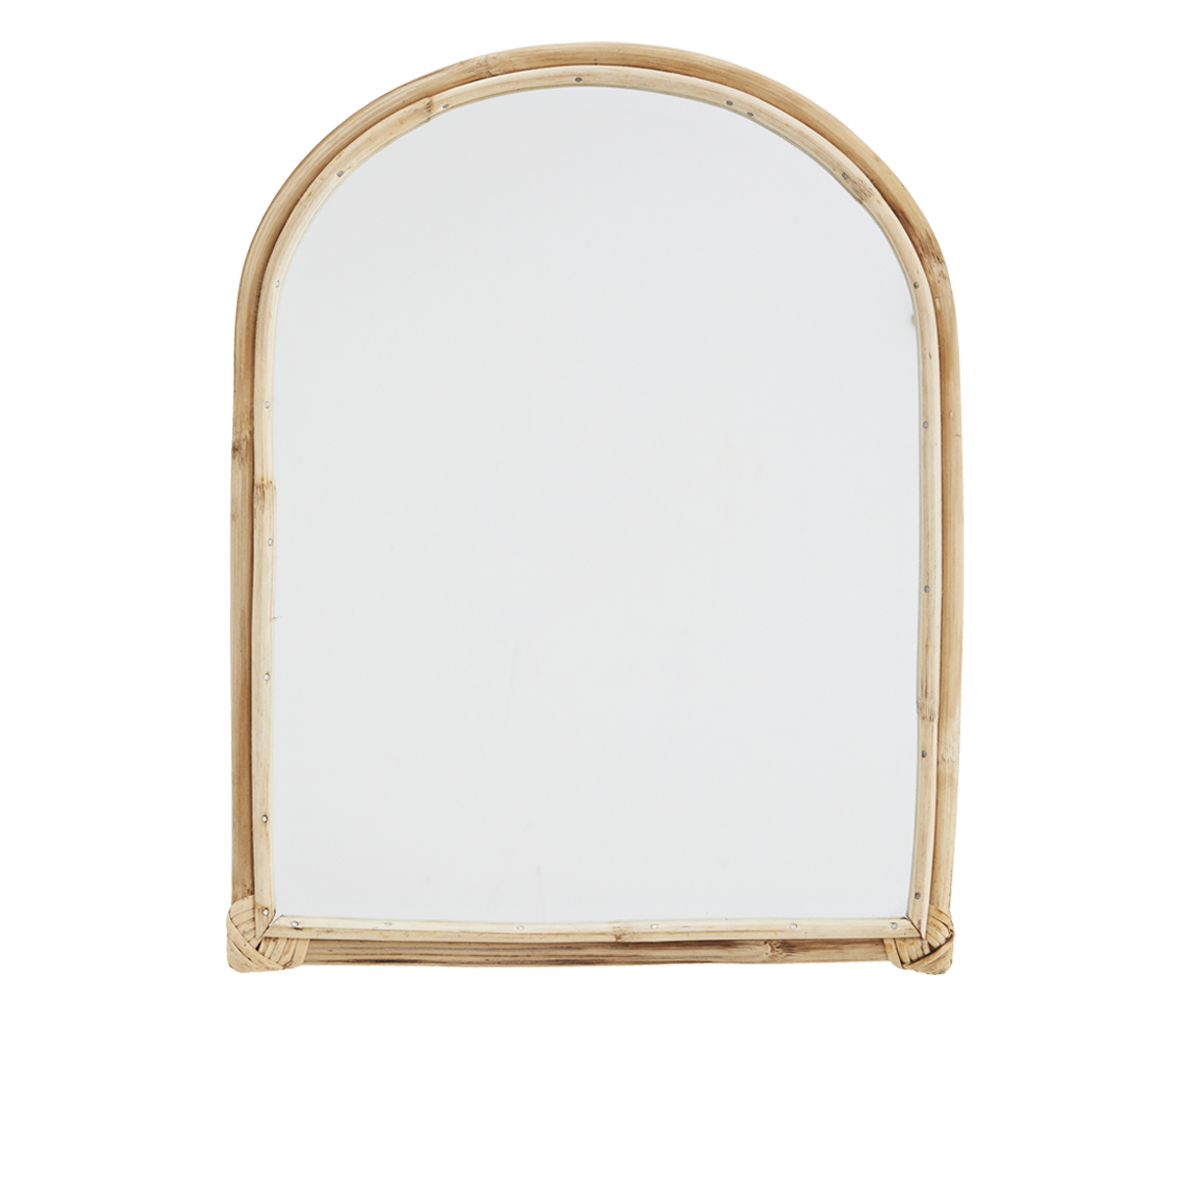 Oval mirror w/ bamboo